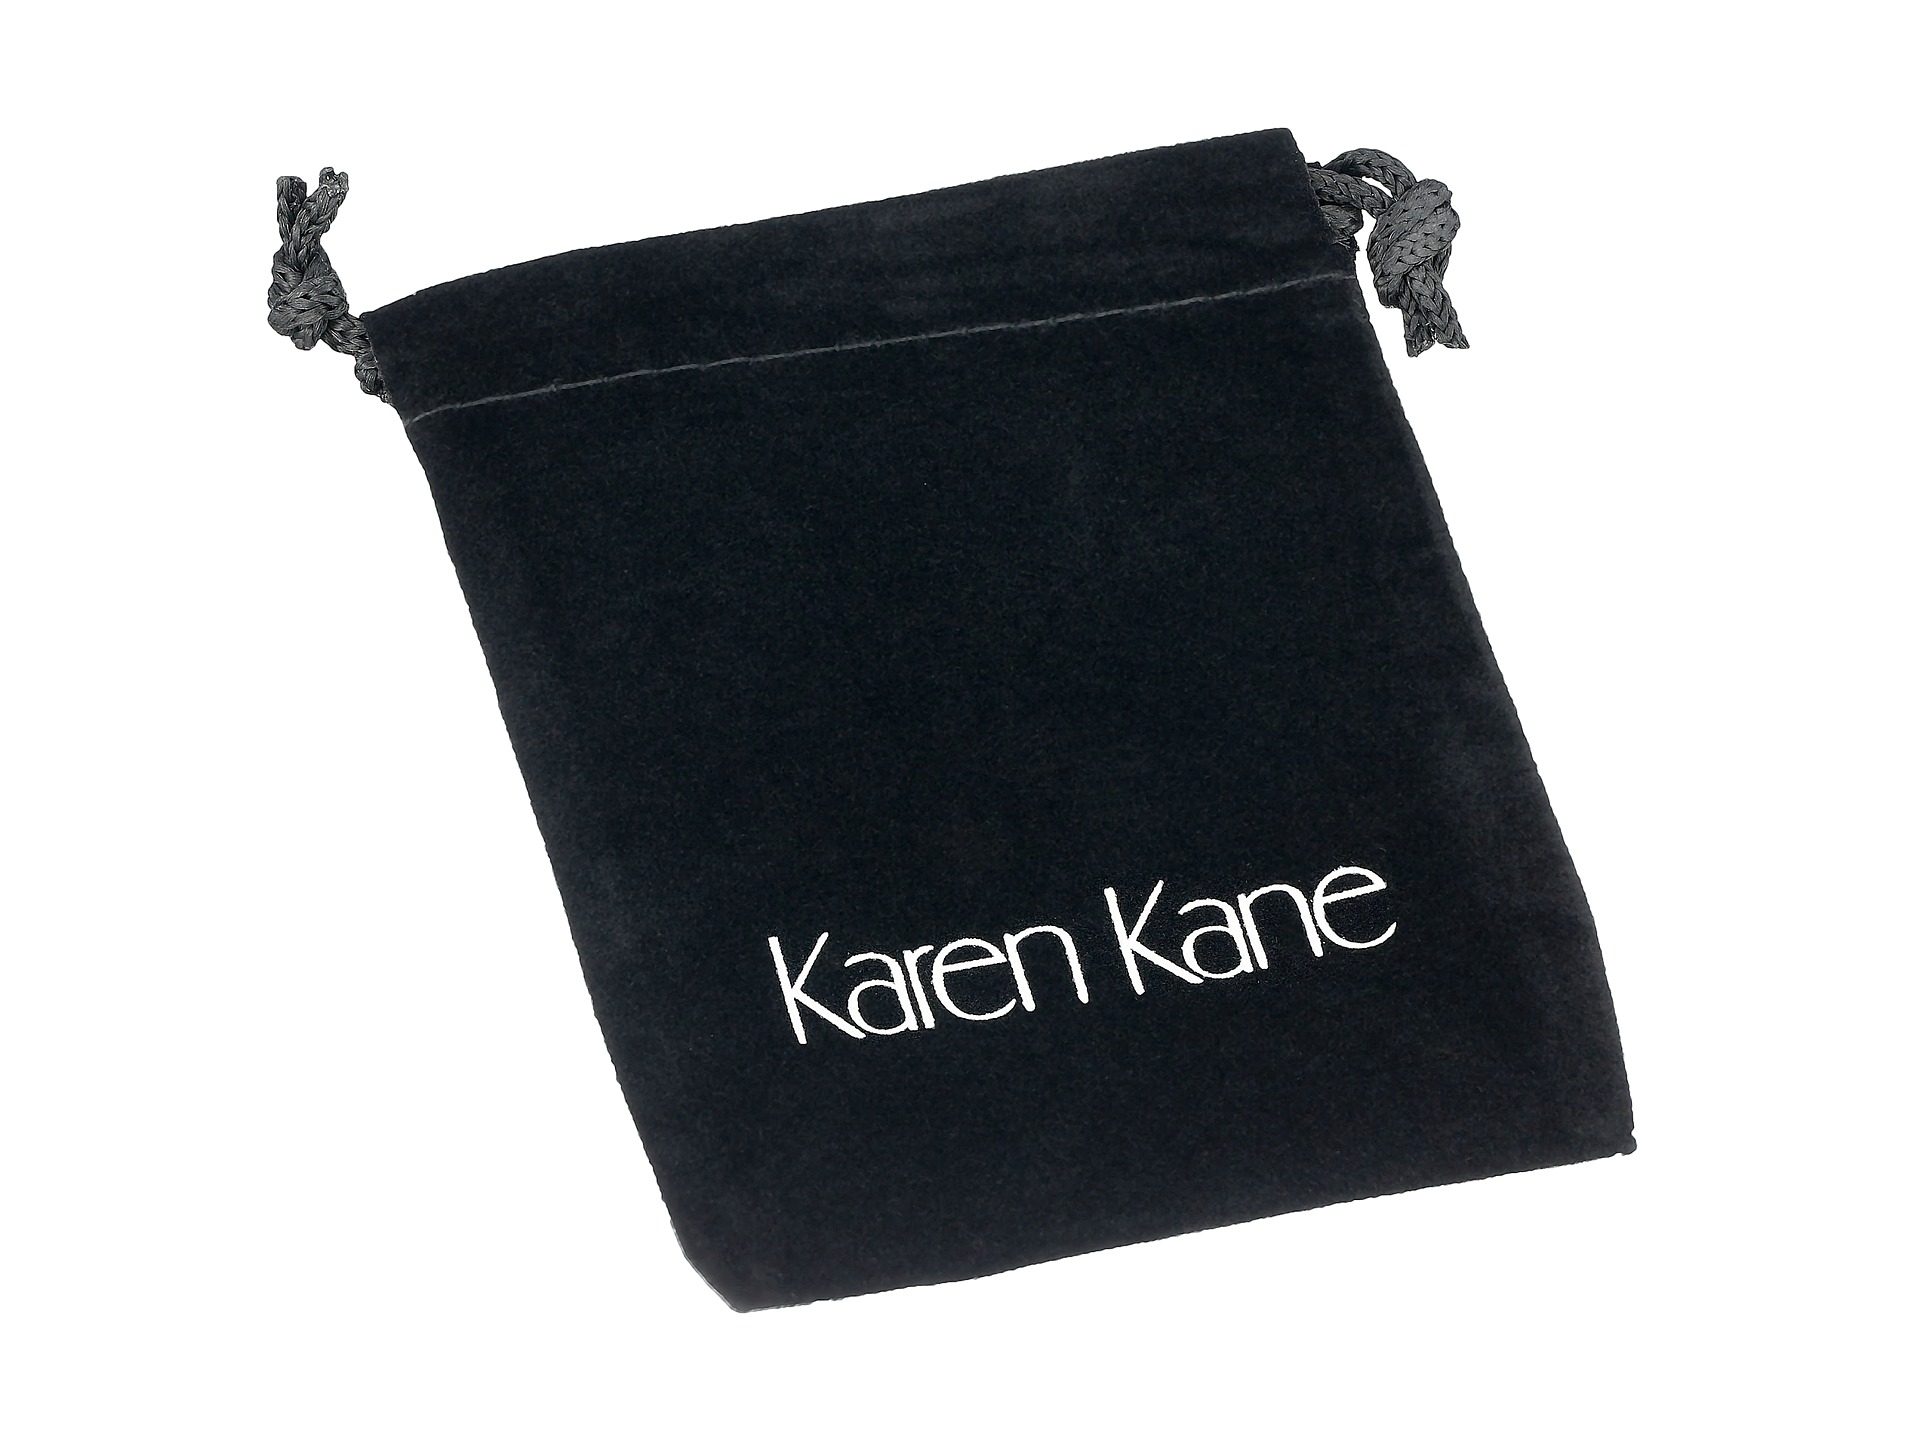 Karen Kane New Moon Stack Bangles Bracelet Gold